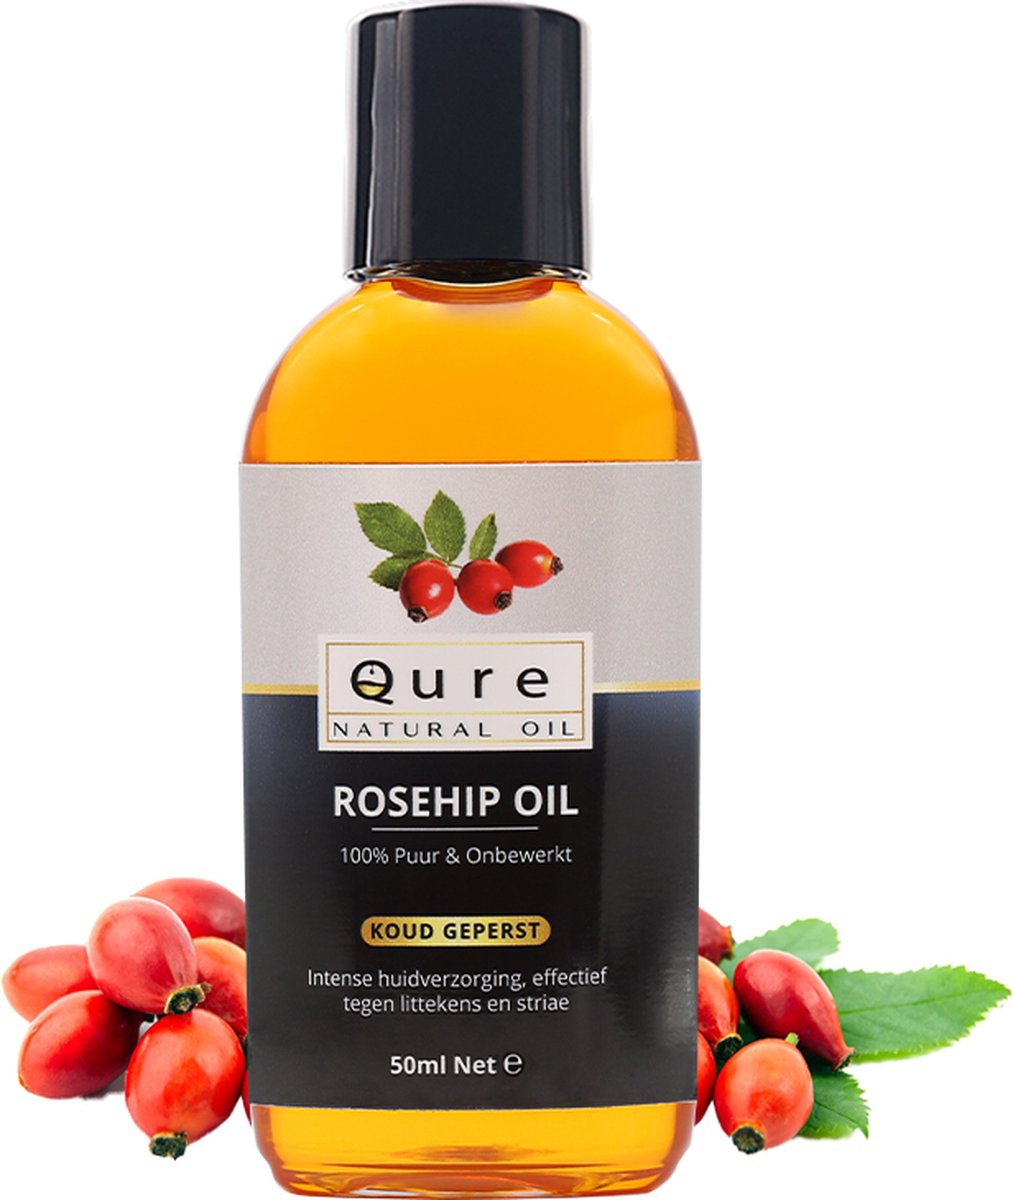 Rozenbottelolie 50ml | Biologisch | 100% Puur & Onbewerkt | Rosehip Oil voor huid, haar en lichaam - Qure Natural Oil